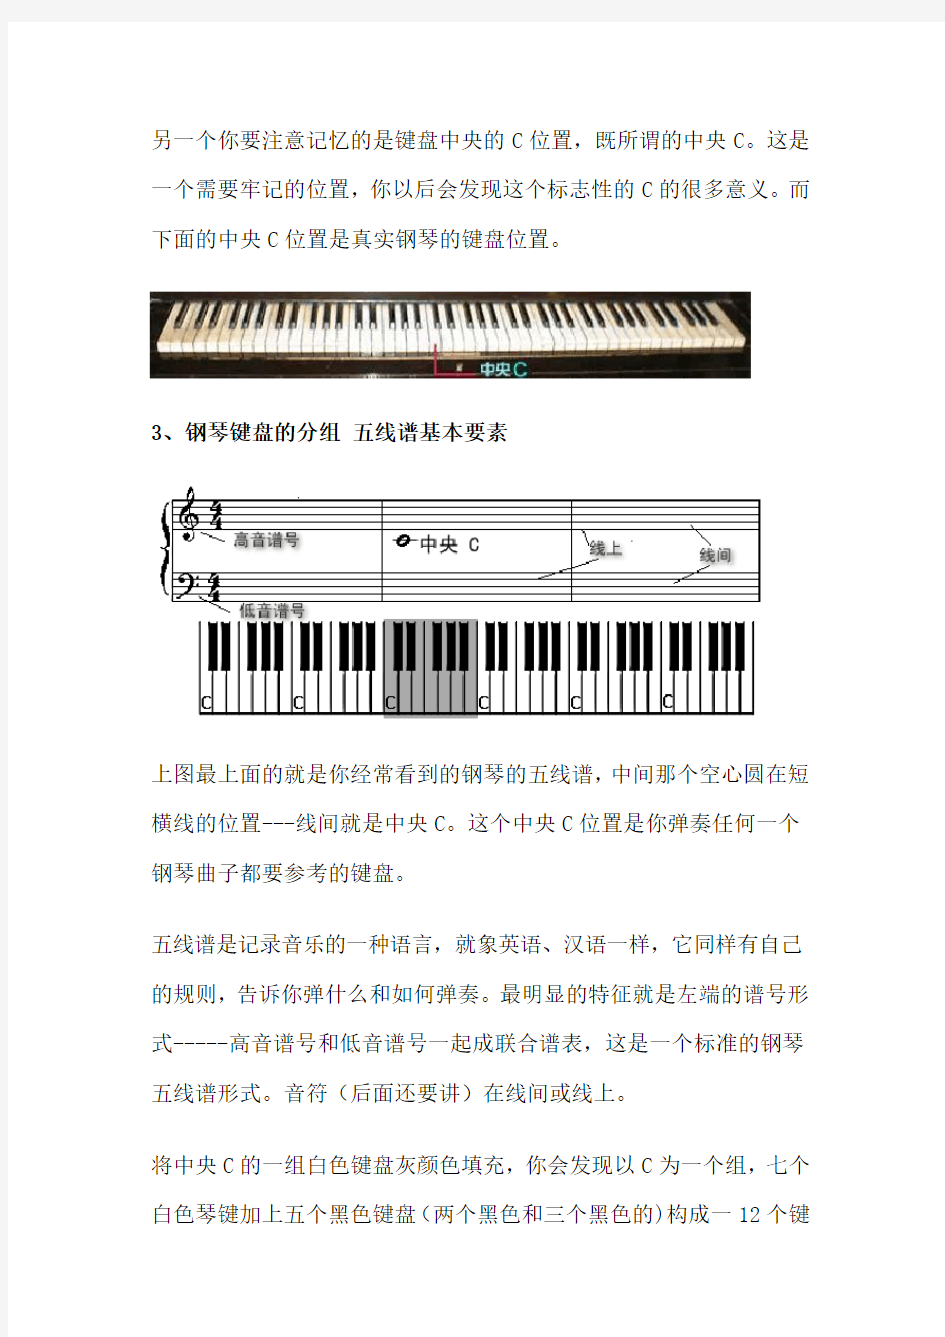 三分钟学会看键盘 教你看懂钢琴五线谱